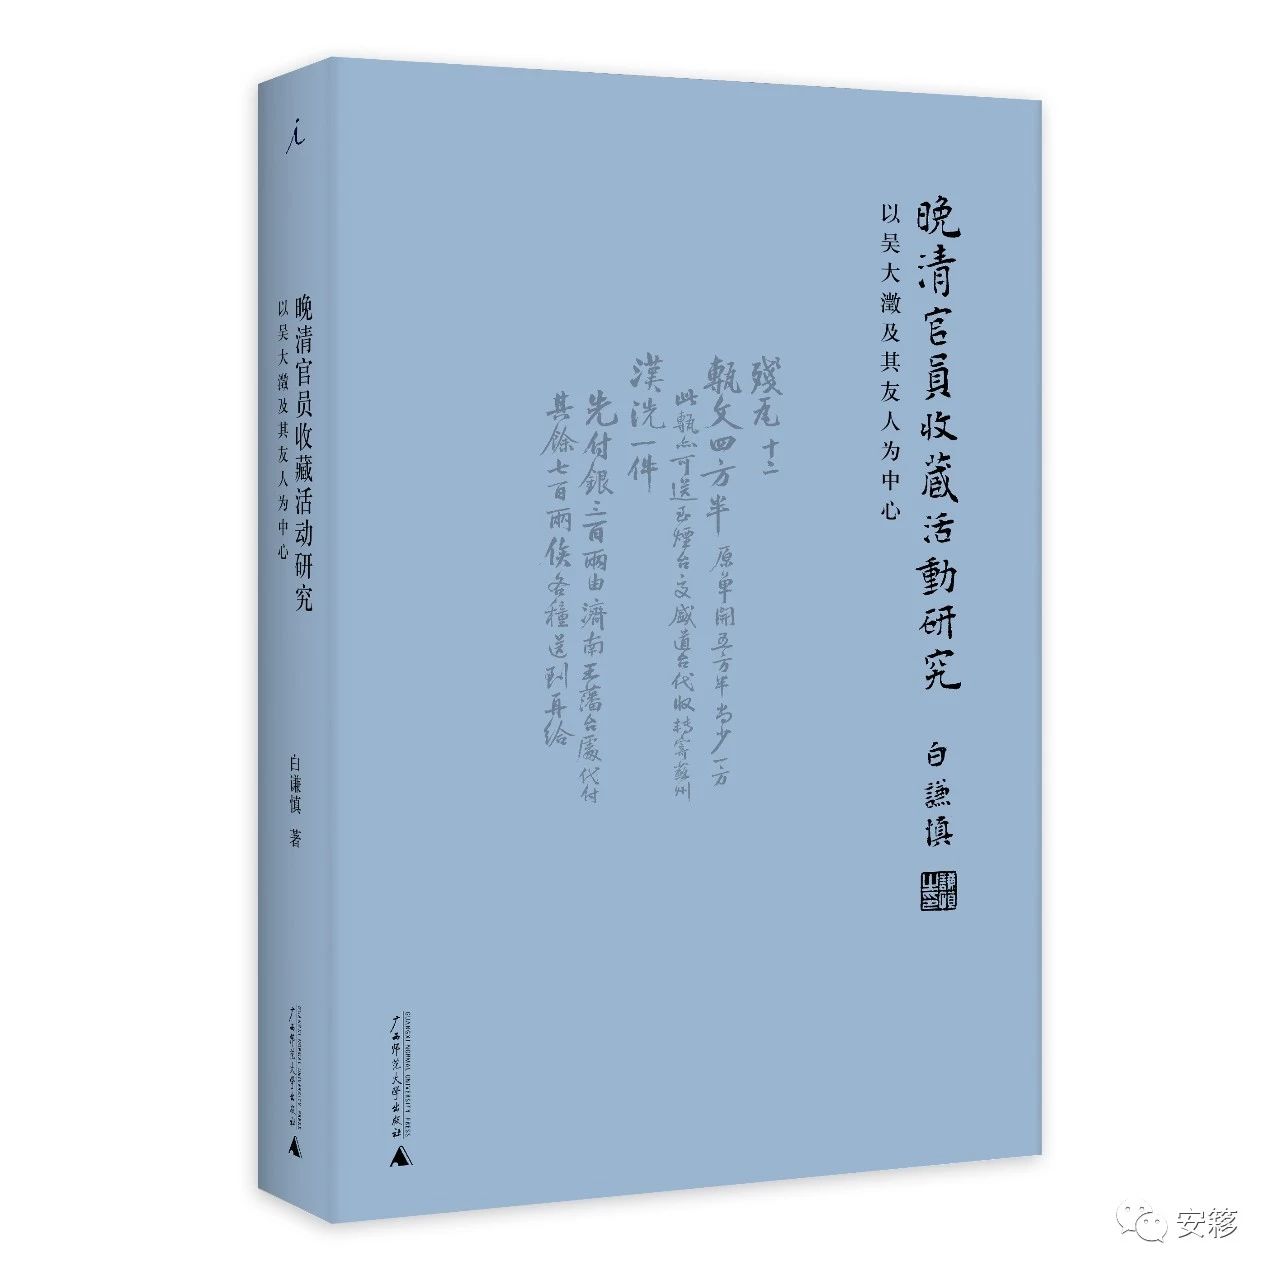 章汝奭、白谦慎新书签售发布会将于9月11日举行